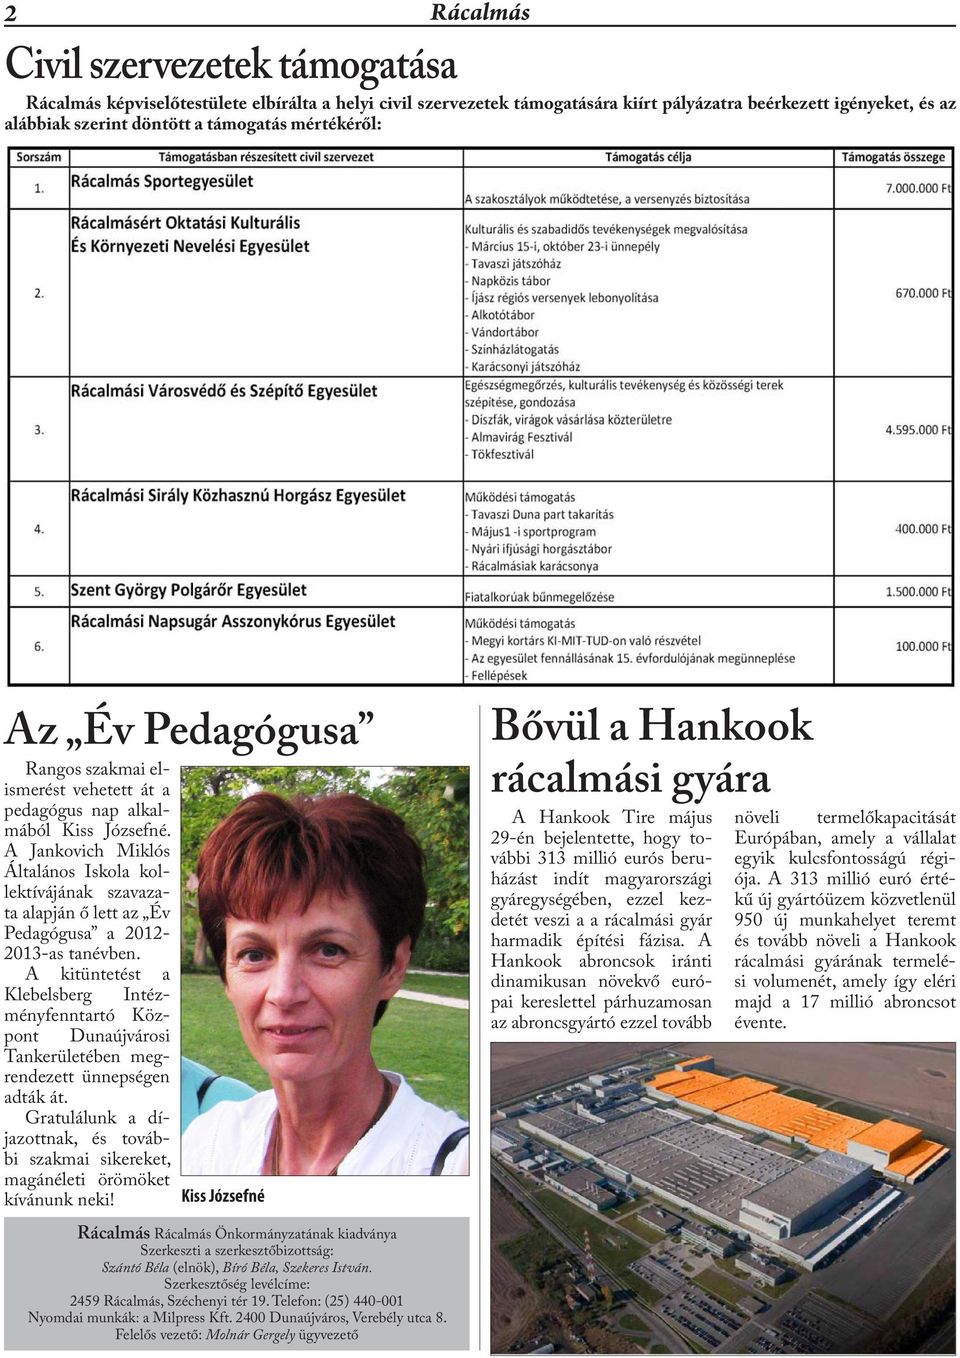 A Jankovich Miklós Általános Iskola kollektívájának szavazata alapján ő lett az Év Pedagógusa a 2012-2013-as tanévben.